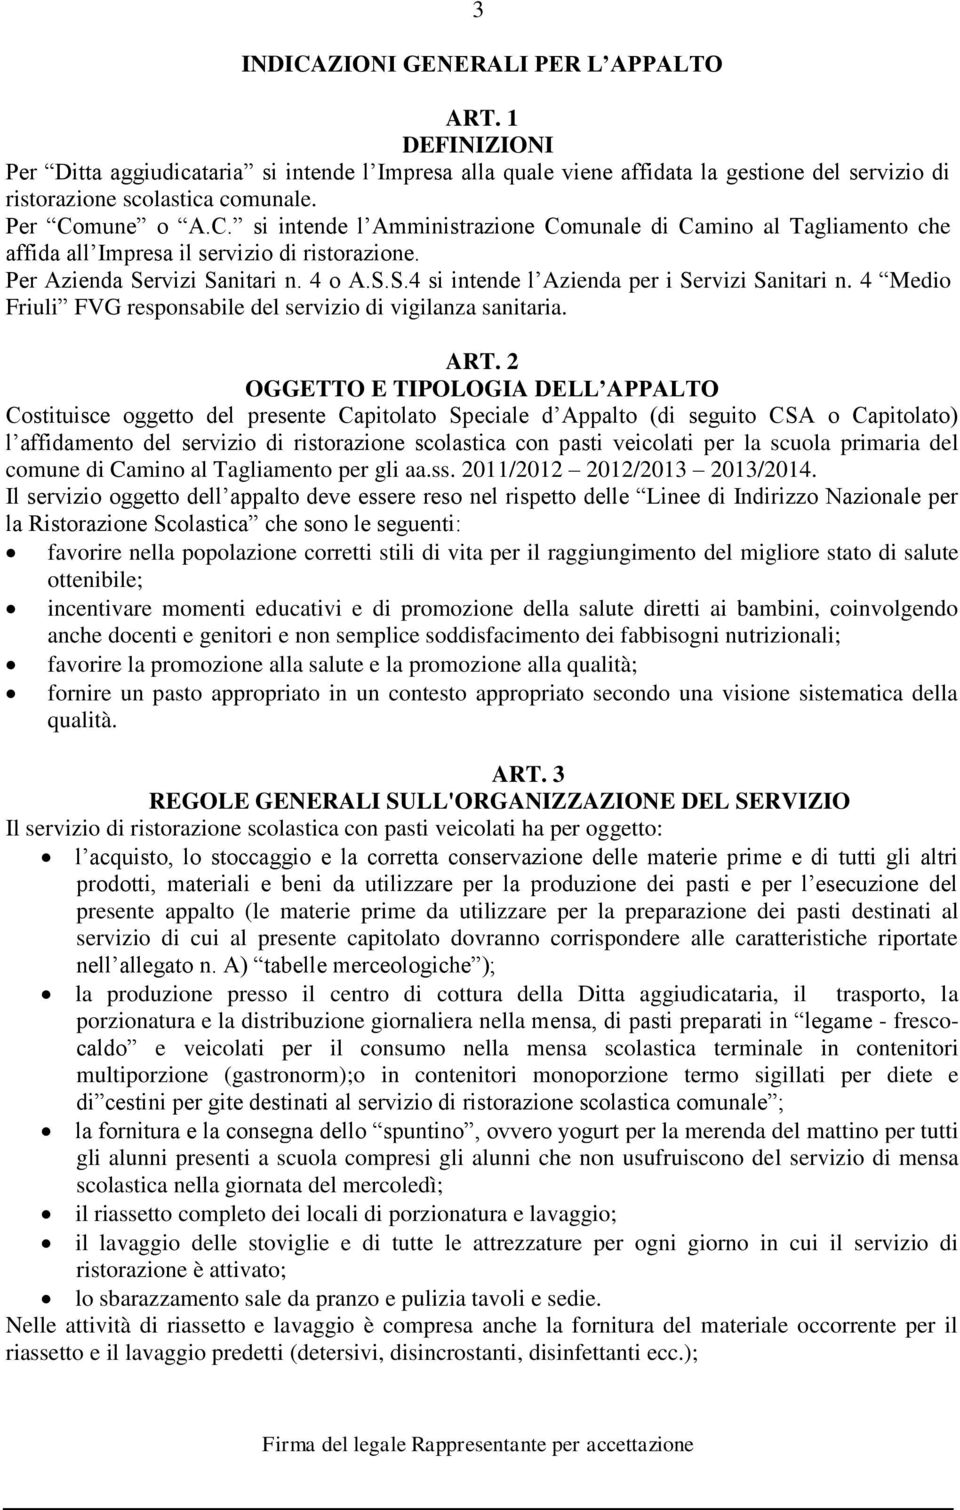 4 Medio Friuli FVG responsabile del servizio di vigilanza sanitaria. ART.